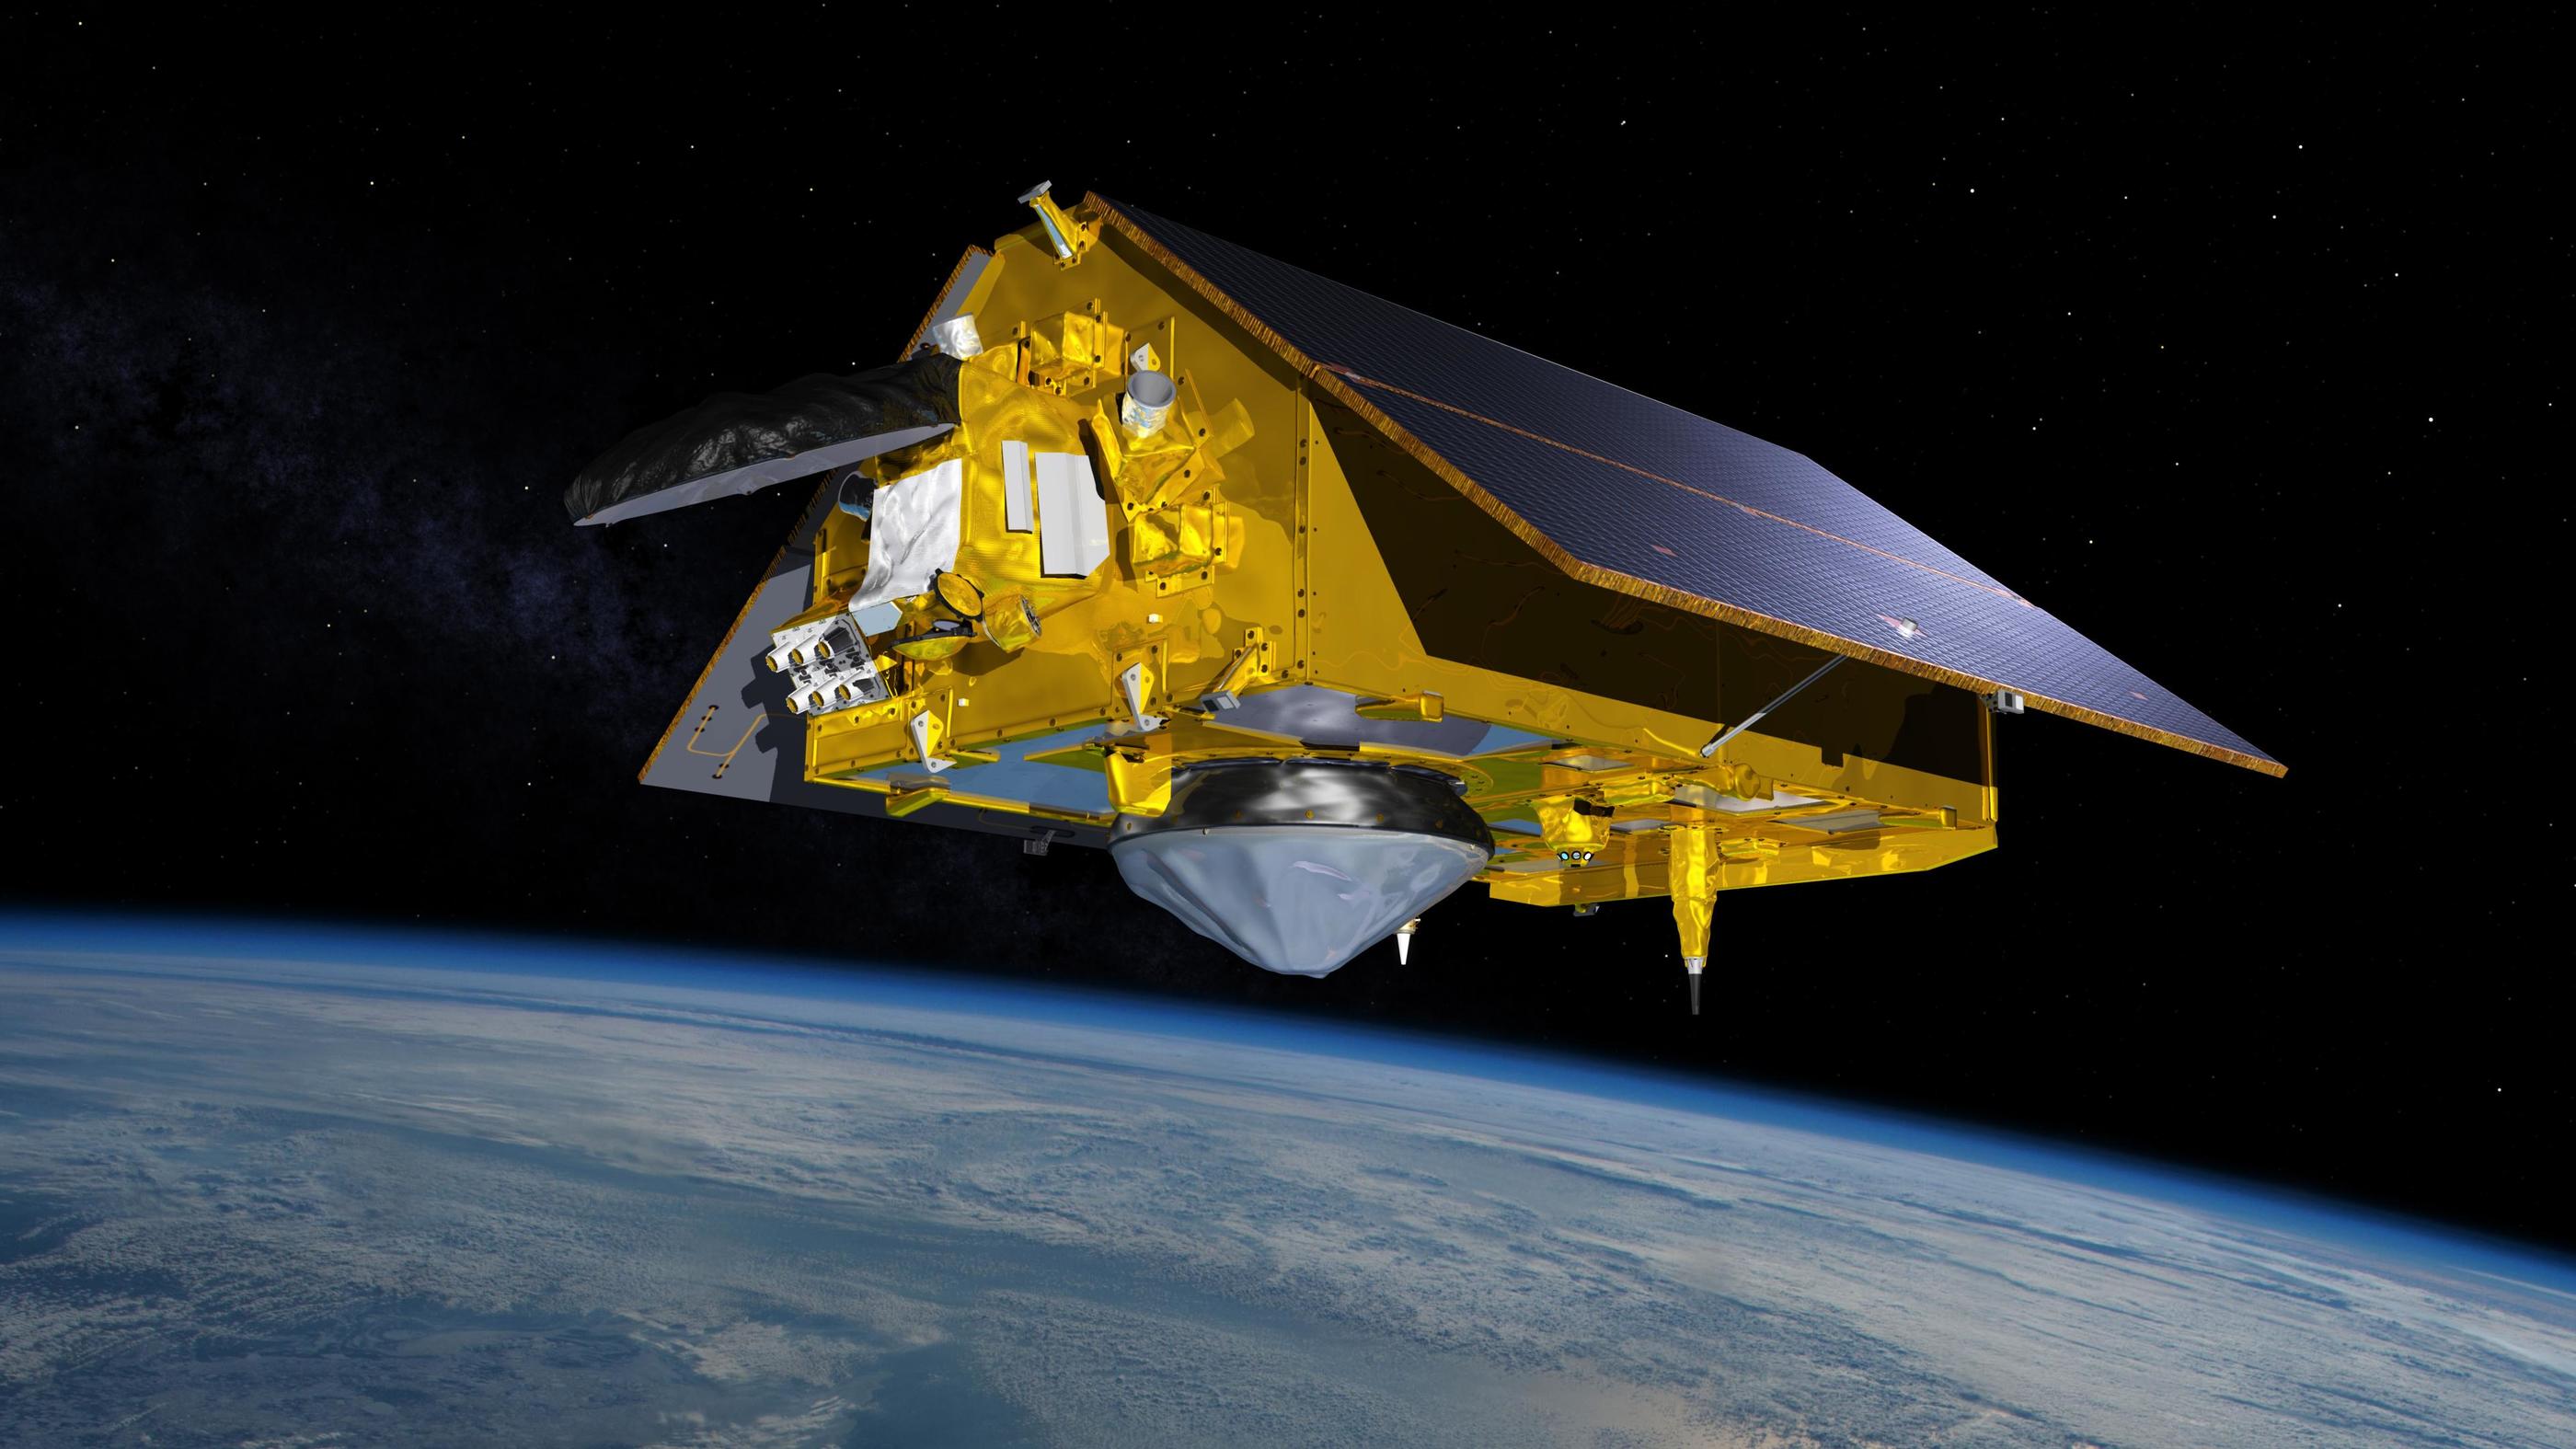 spacecraft and satellite